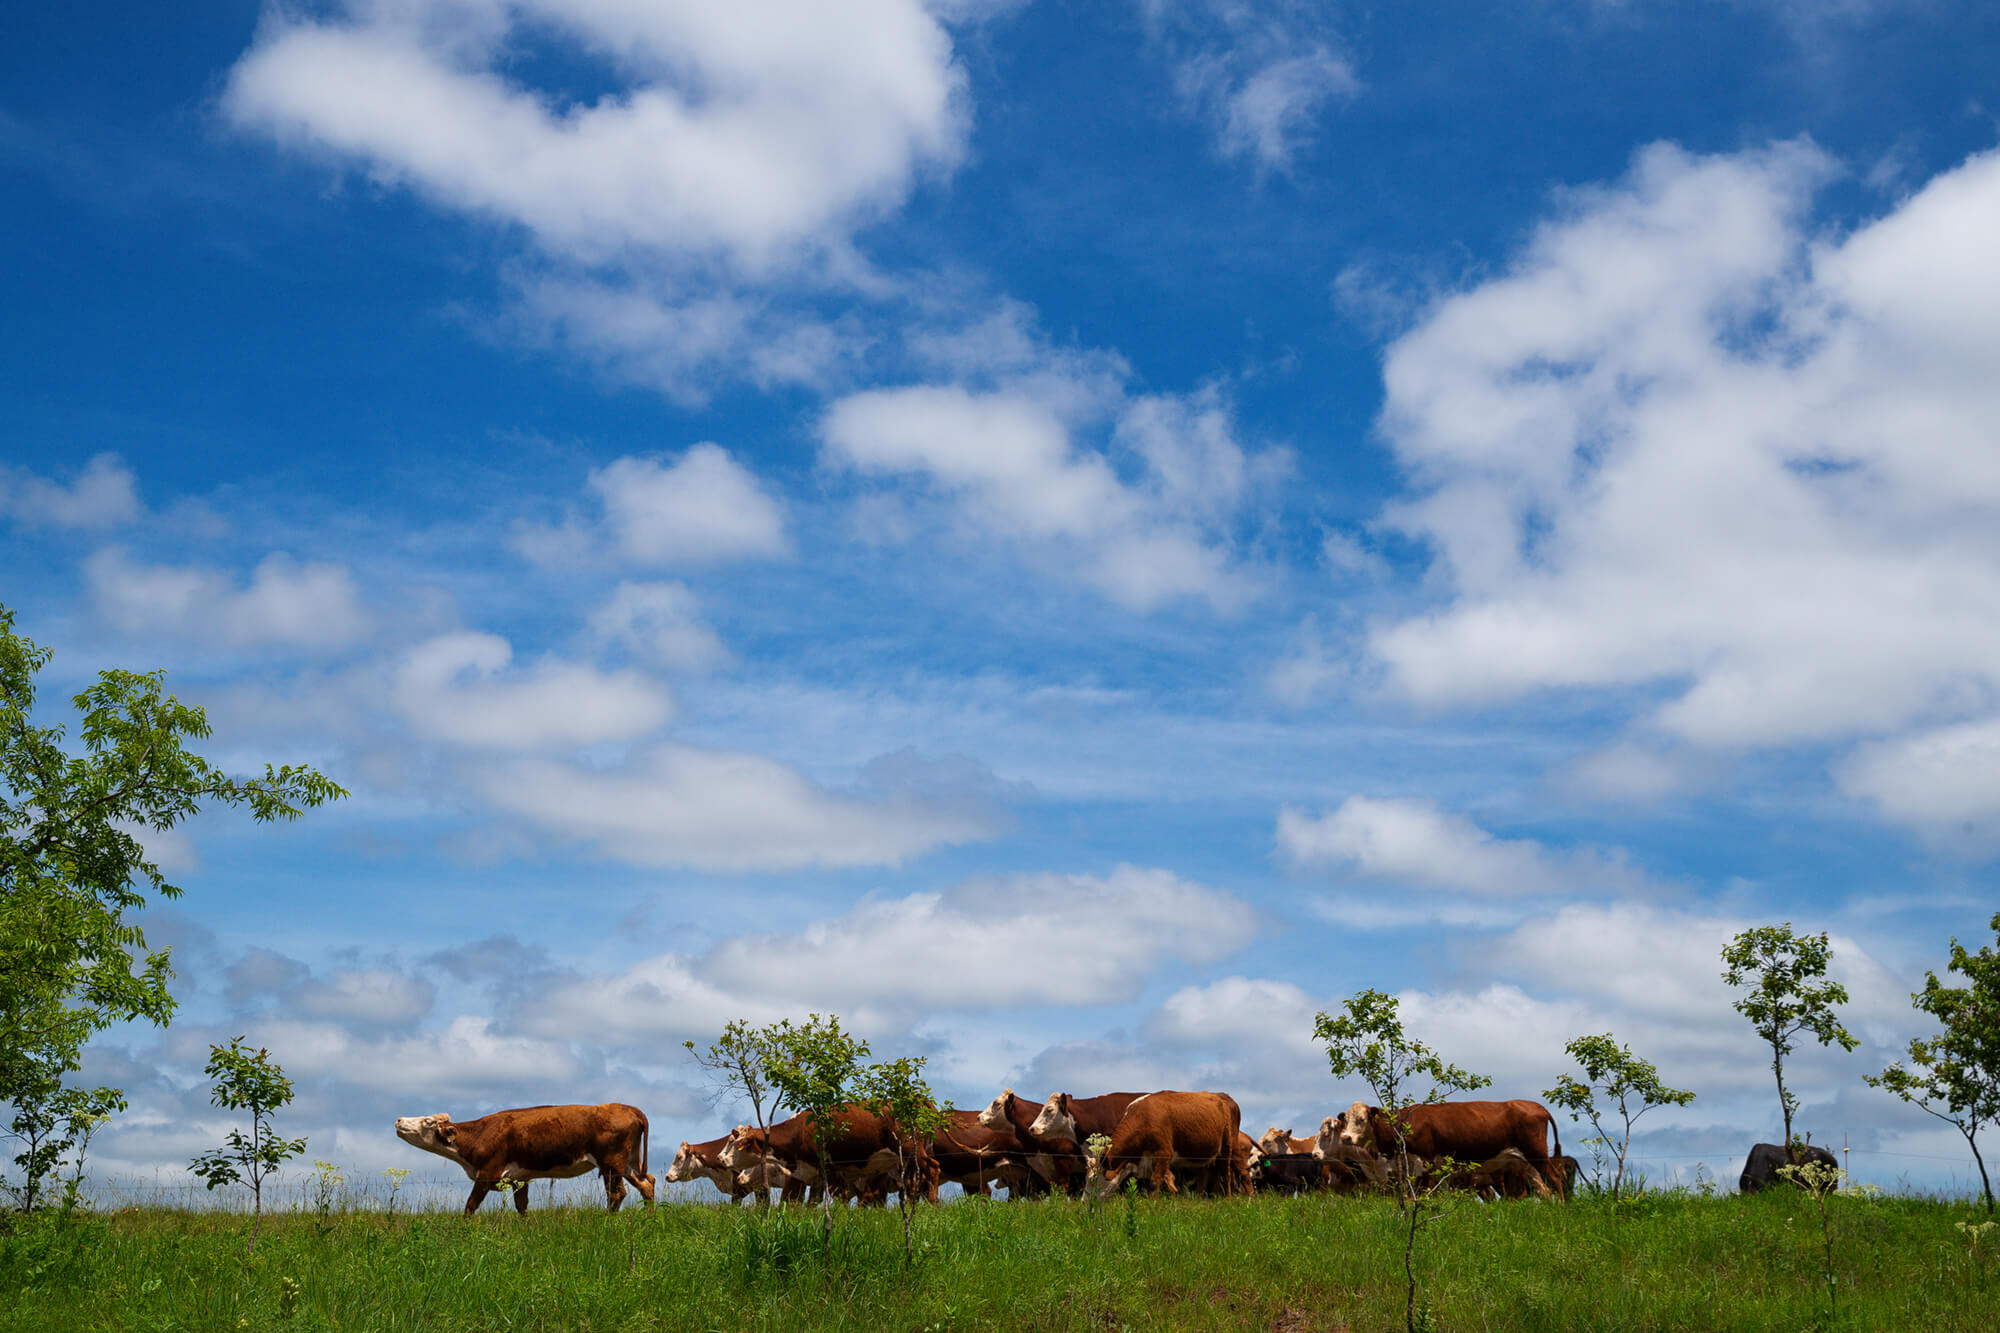 Cattle grazing under a blue sky